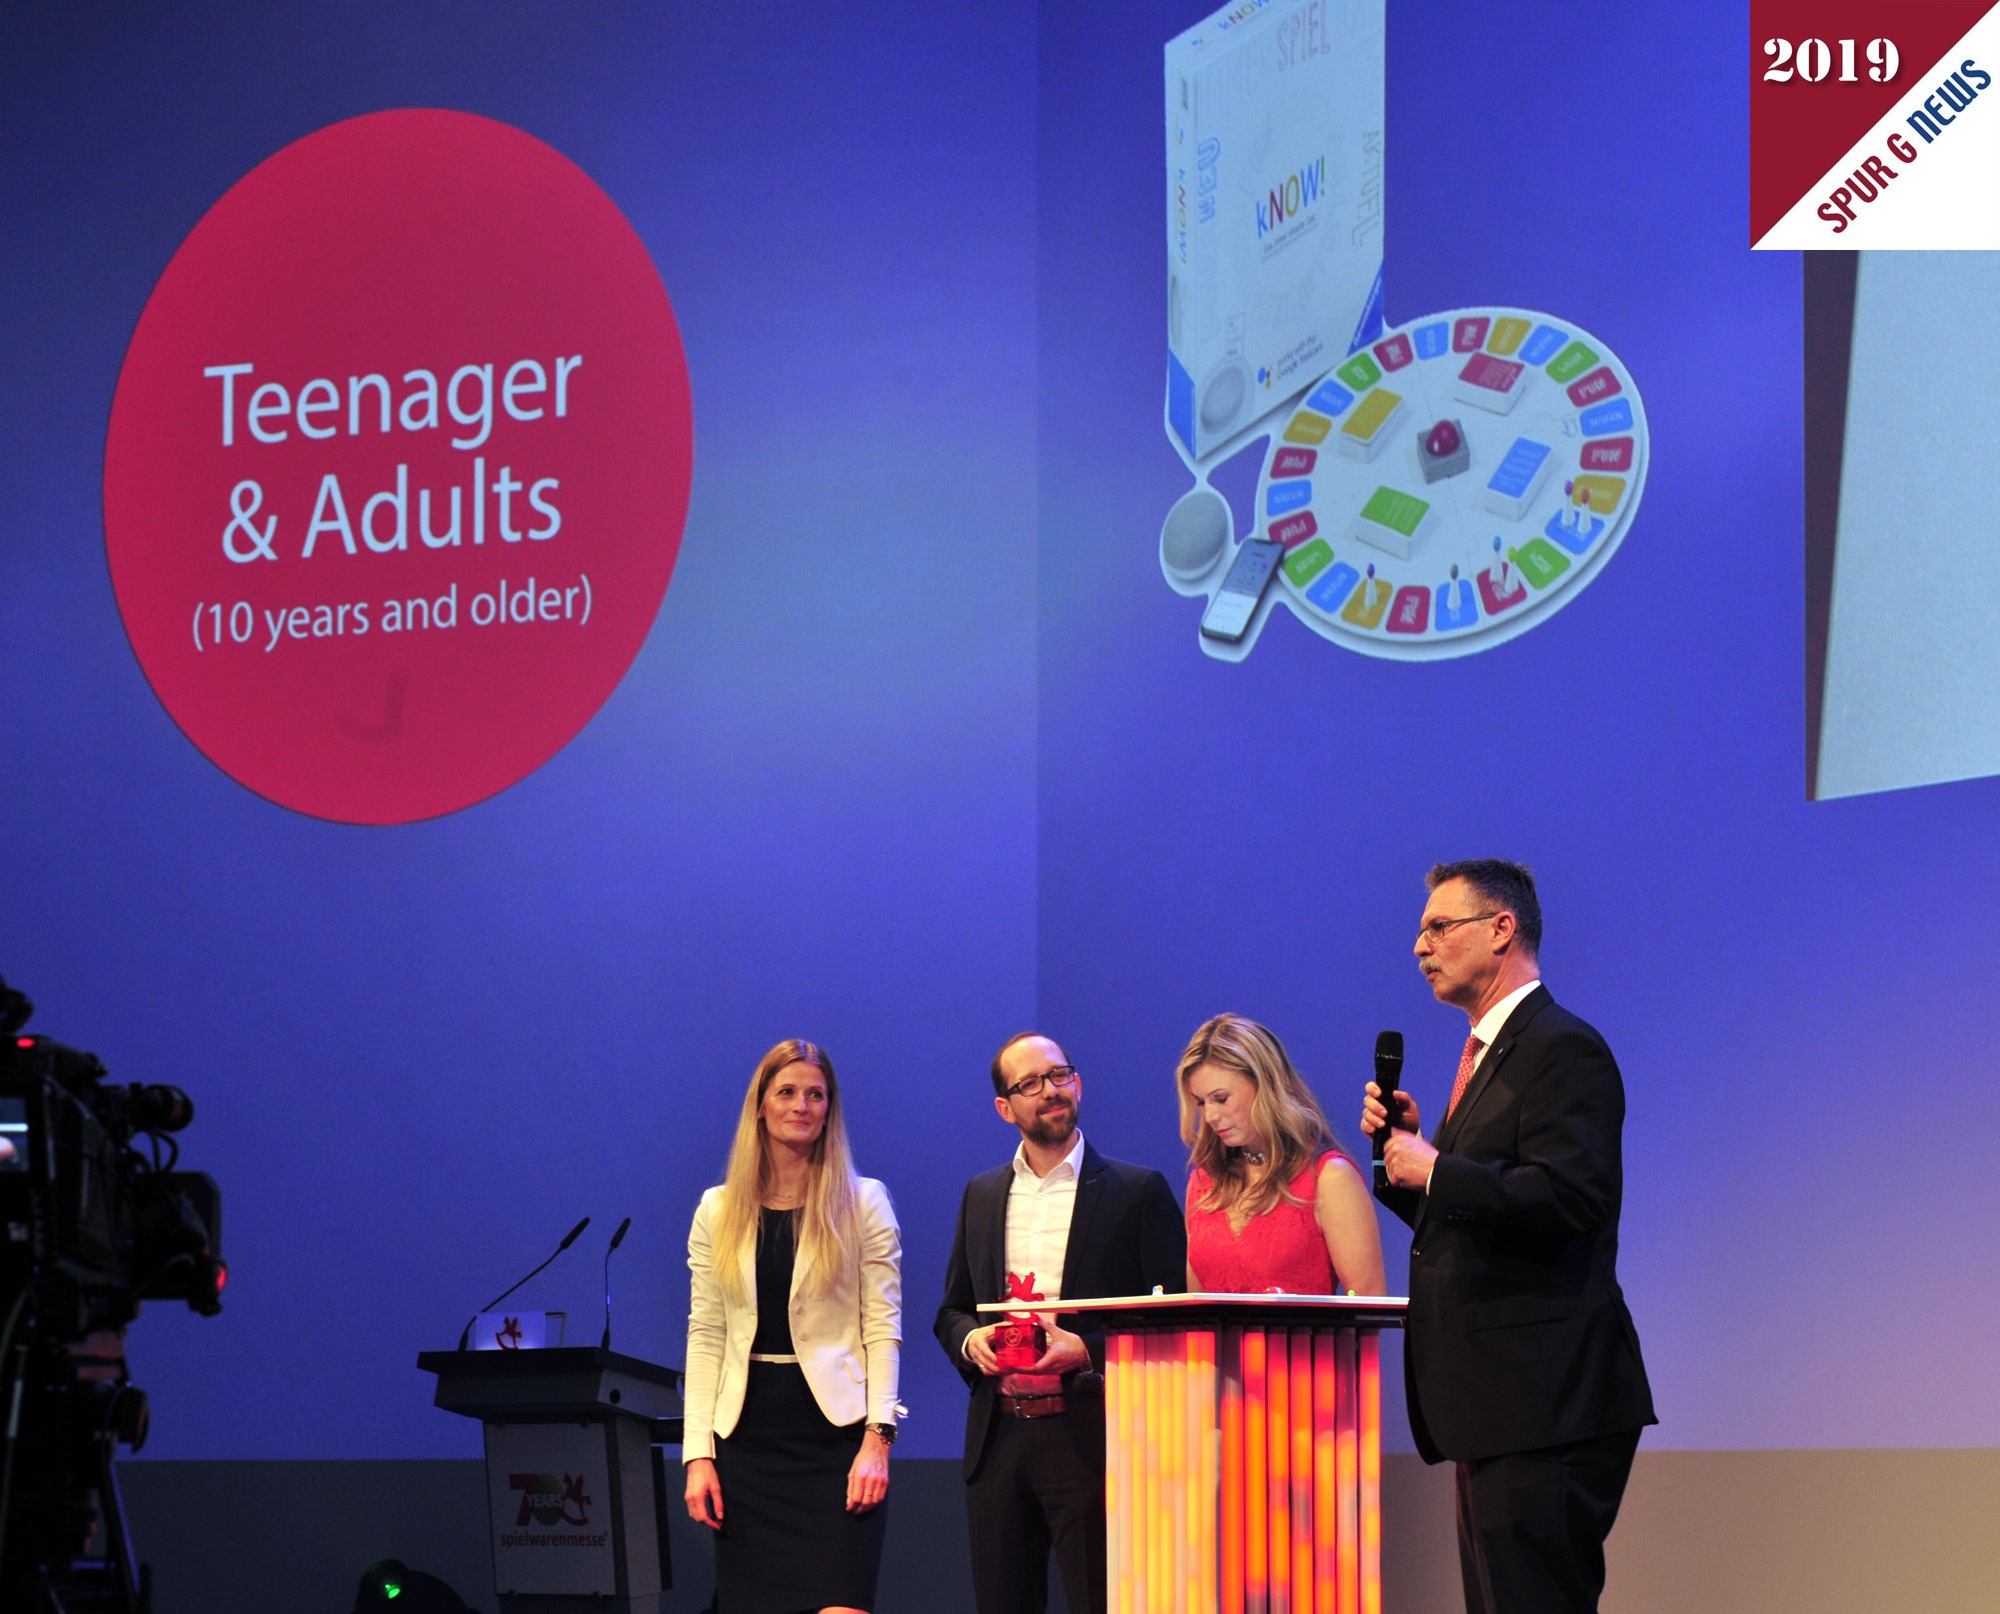 Der Preis in der Kategorie Teenager & Adults wurde 2019 an das Unternehmen Ravensburger Spieleverlag mit dem Titel kNOW! vergeben. Ein interaktives Spiel mit speziellen Anforderungen.